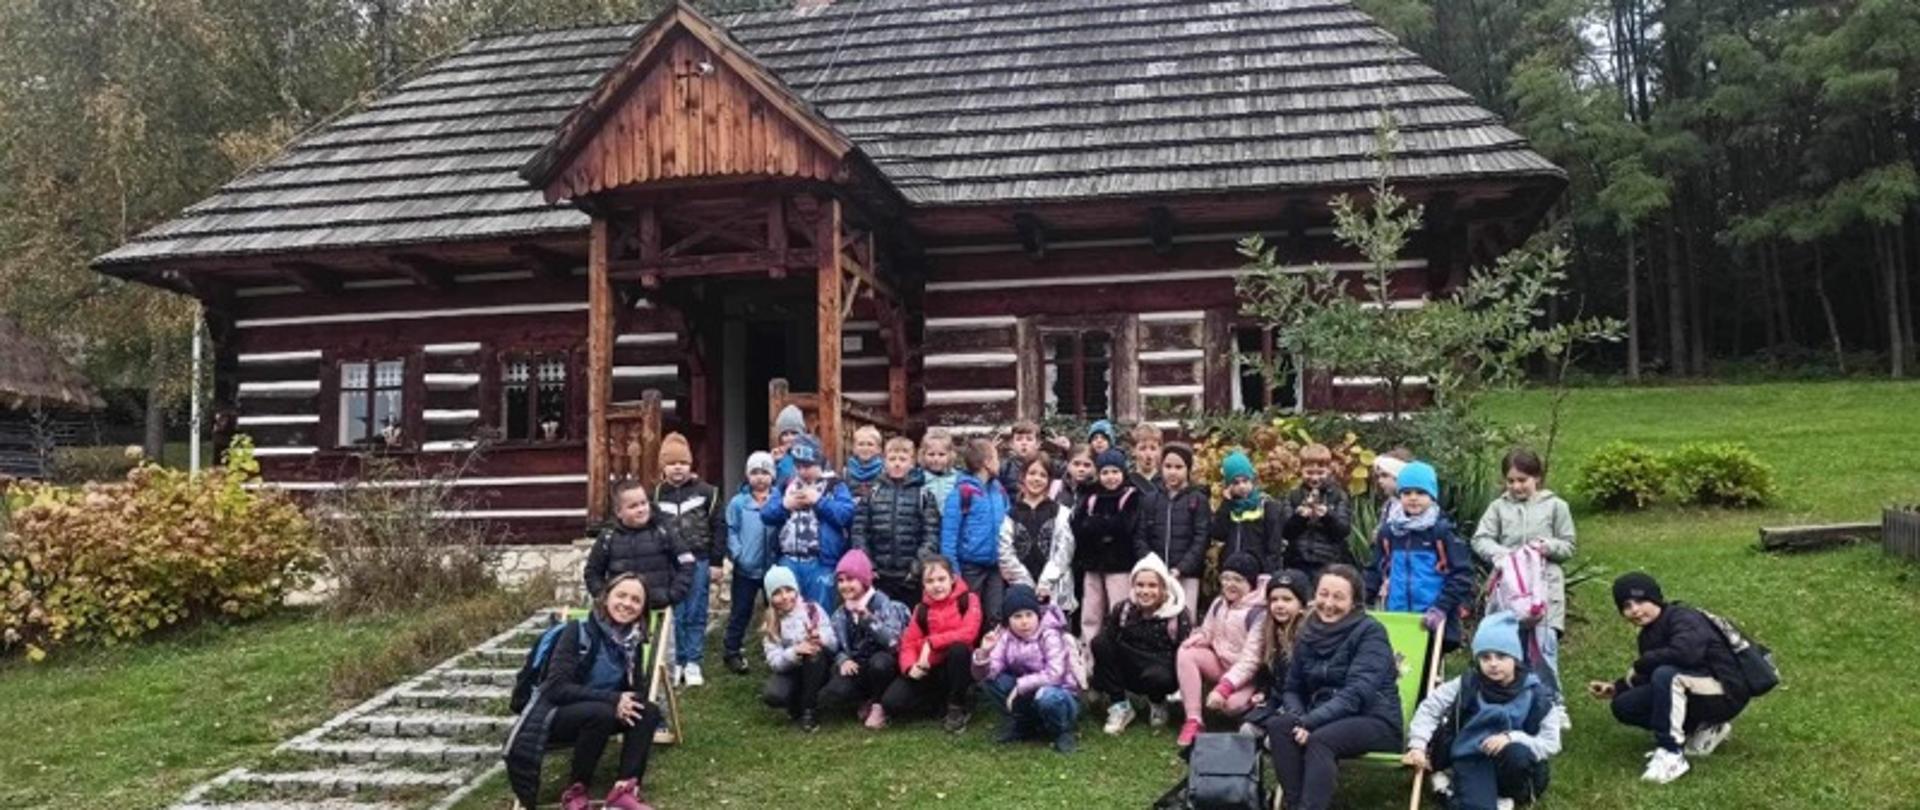 Na zdjęciu widać grupę dzieci z wychowawczyniami na tle starego, drewnianego domu.